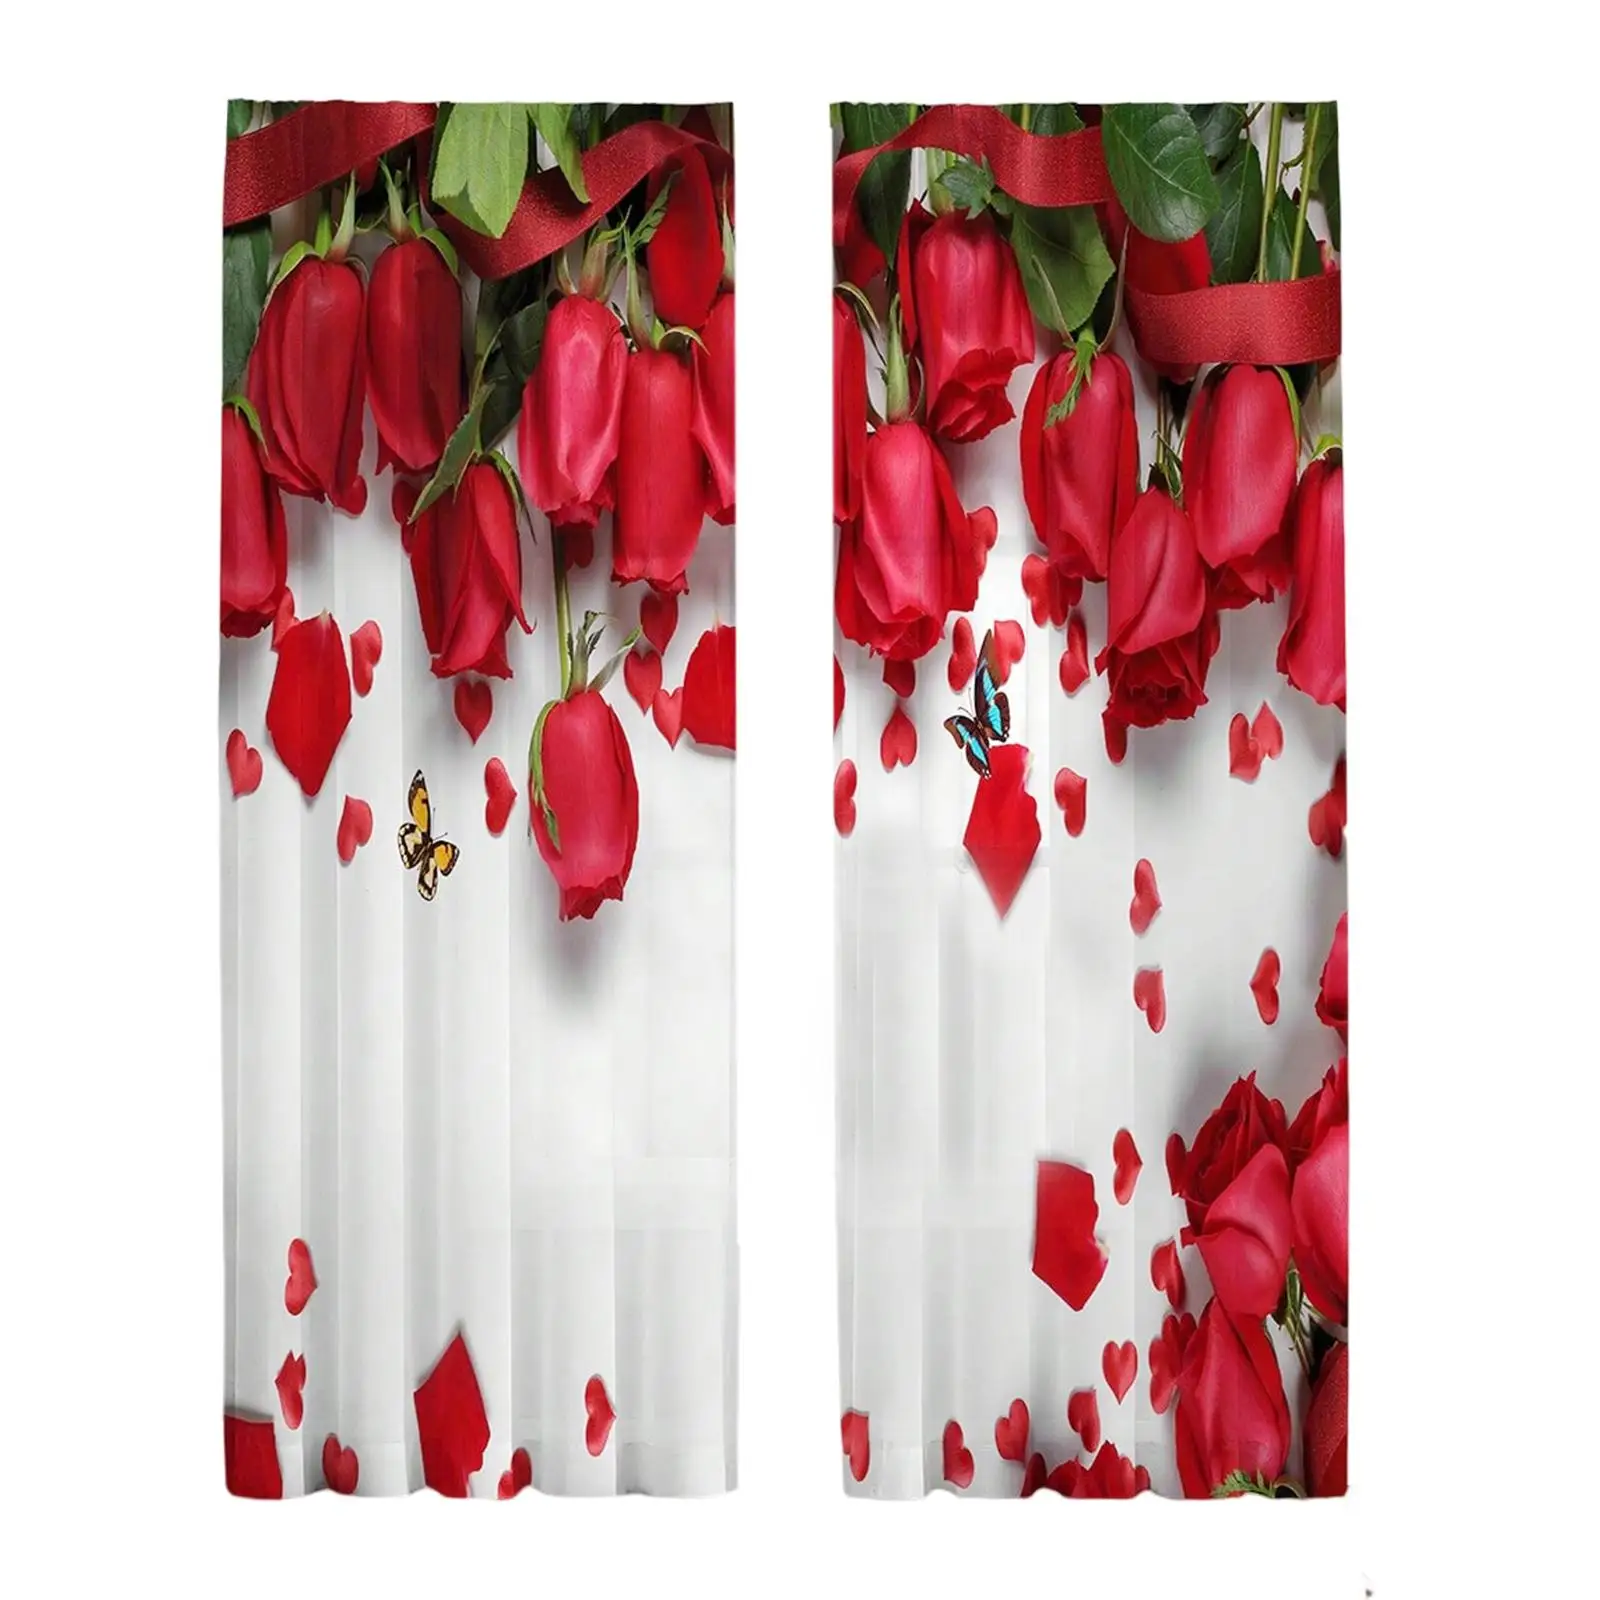 Printed Sheer Curtains Elegant 2 Panels 1 Pair Rose Floral Print 52 x 95 Inches Semitransparent Sheer Drapes Draperies for Yard